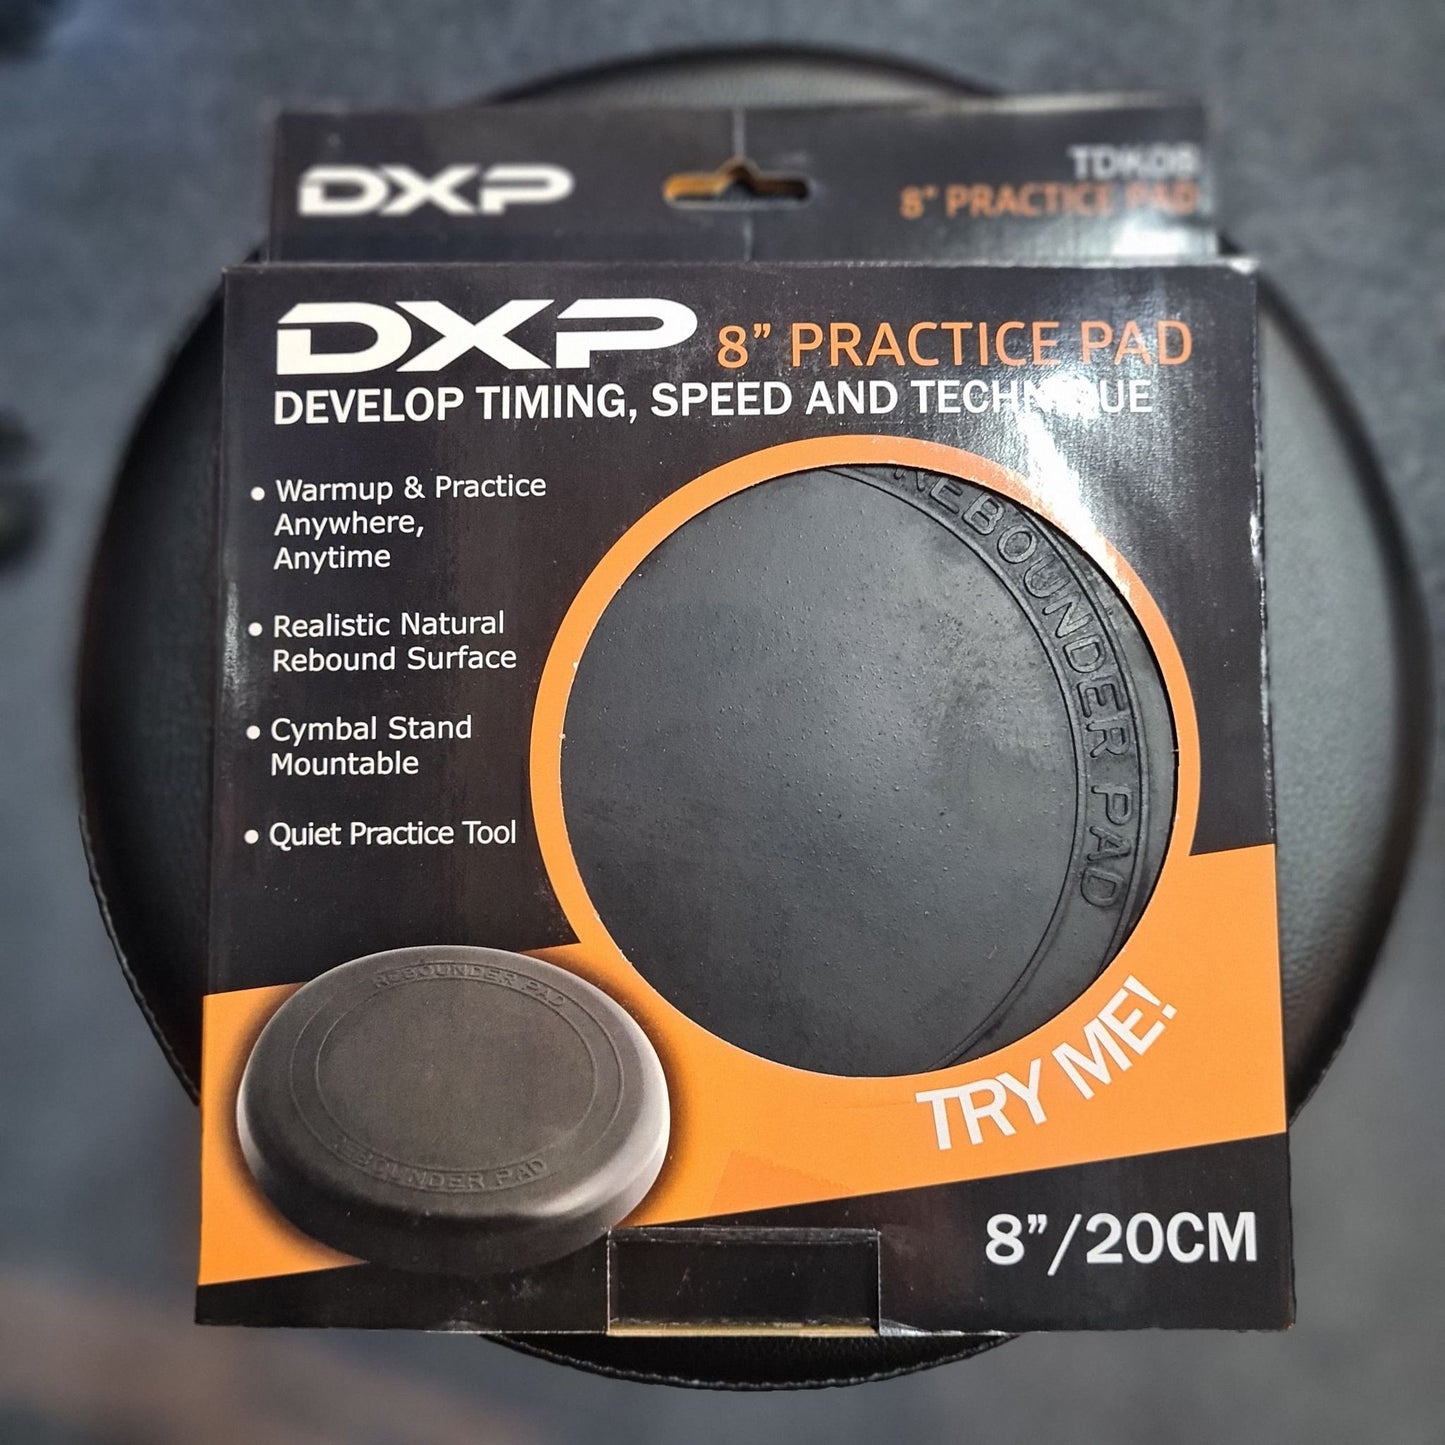 DXP 8" Practice Pad